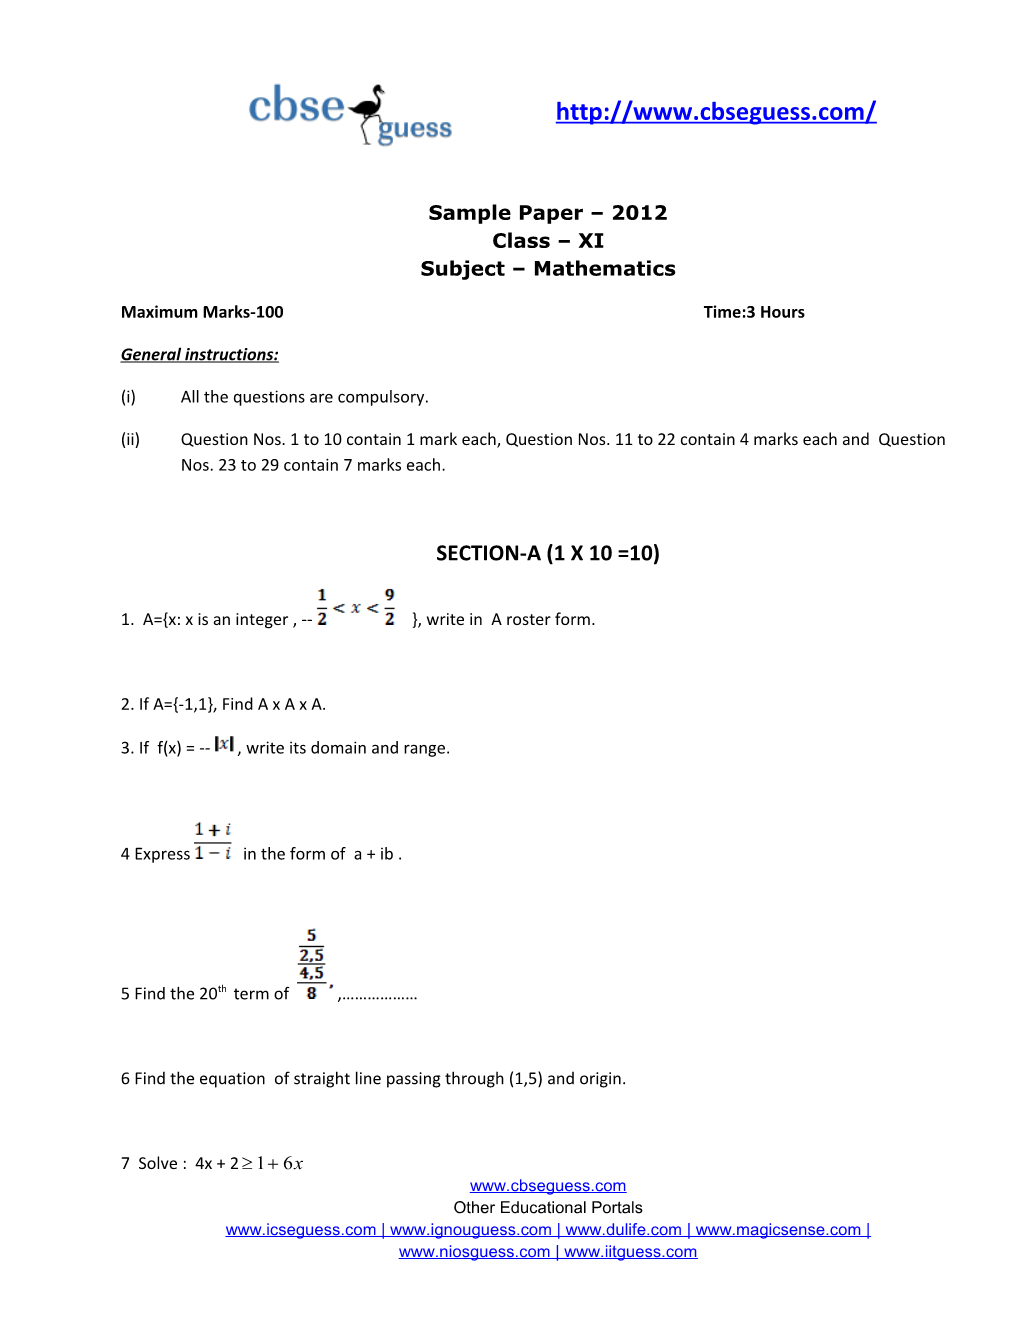 Sample Paper 2012 Class XI Subject Mathematics